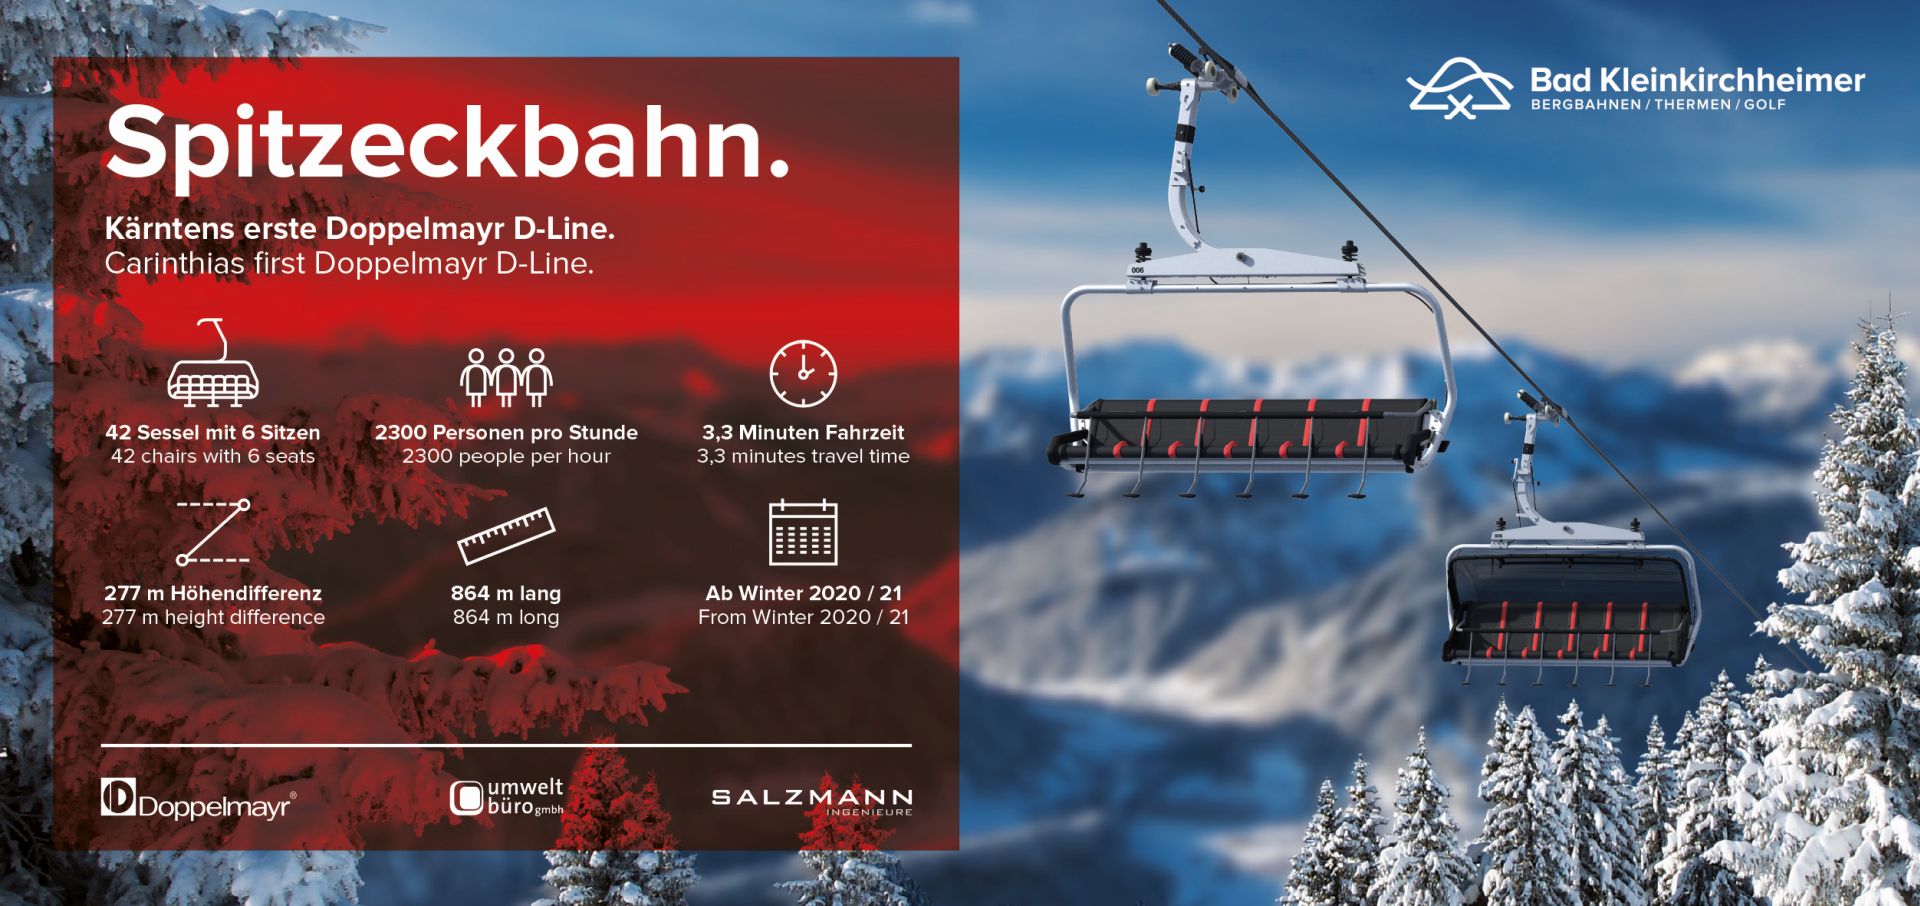 Kärntens erste Doppelmayr D-Line mit höchstem Komfort,  Spitzeckbahn im Skigebiet Bad Kleinkirchheimer Bergbahnen              